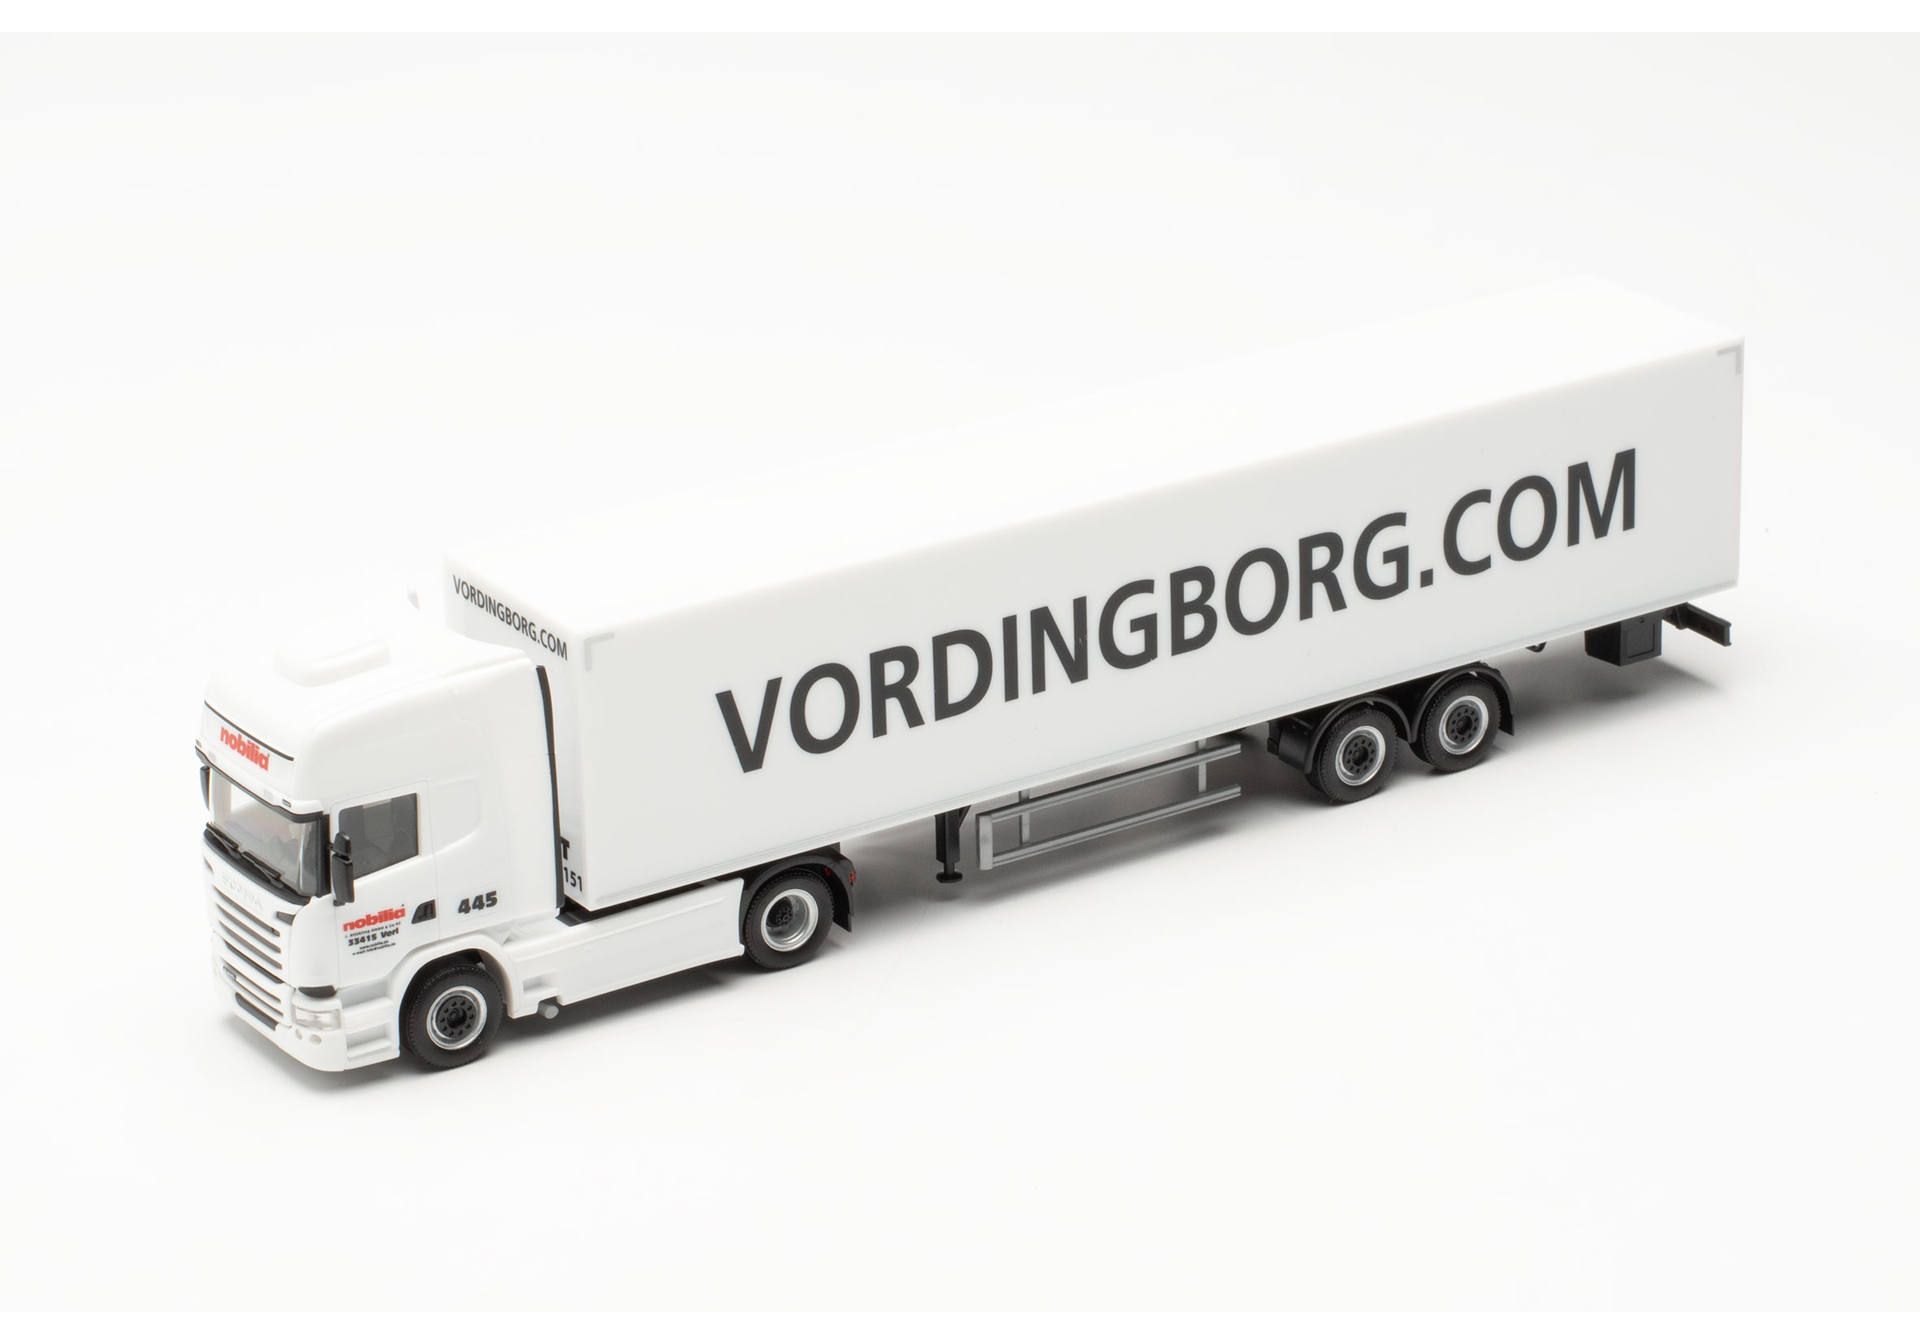  Scania R'13 TL box semitrailer "Nobilia - Vordingborg"